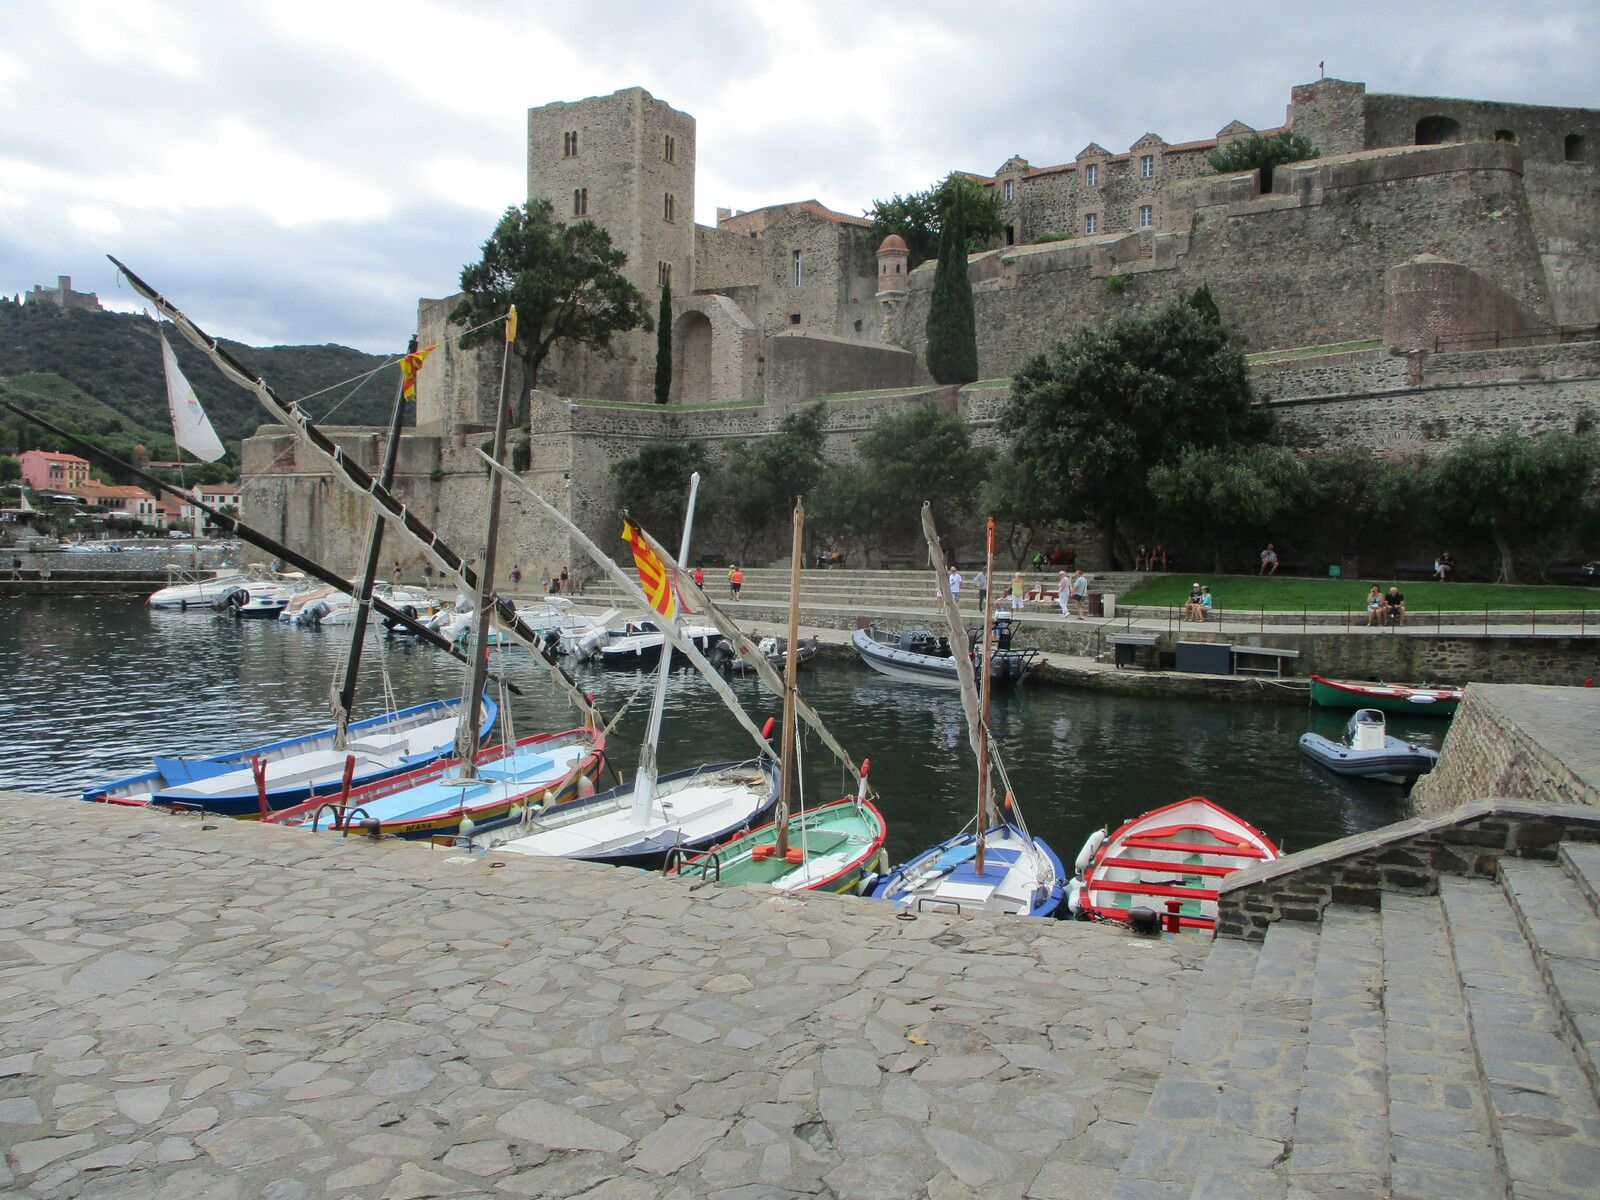  Le Château est la propriété du Conseil départemental des Pyrénées-Orientales, depuis 1952 et gère l'accueil du public et l'organisation d'événements, avec la mairie de Collioure et Réseau culturel Terre catalane